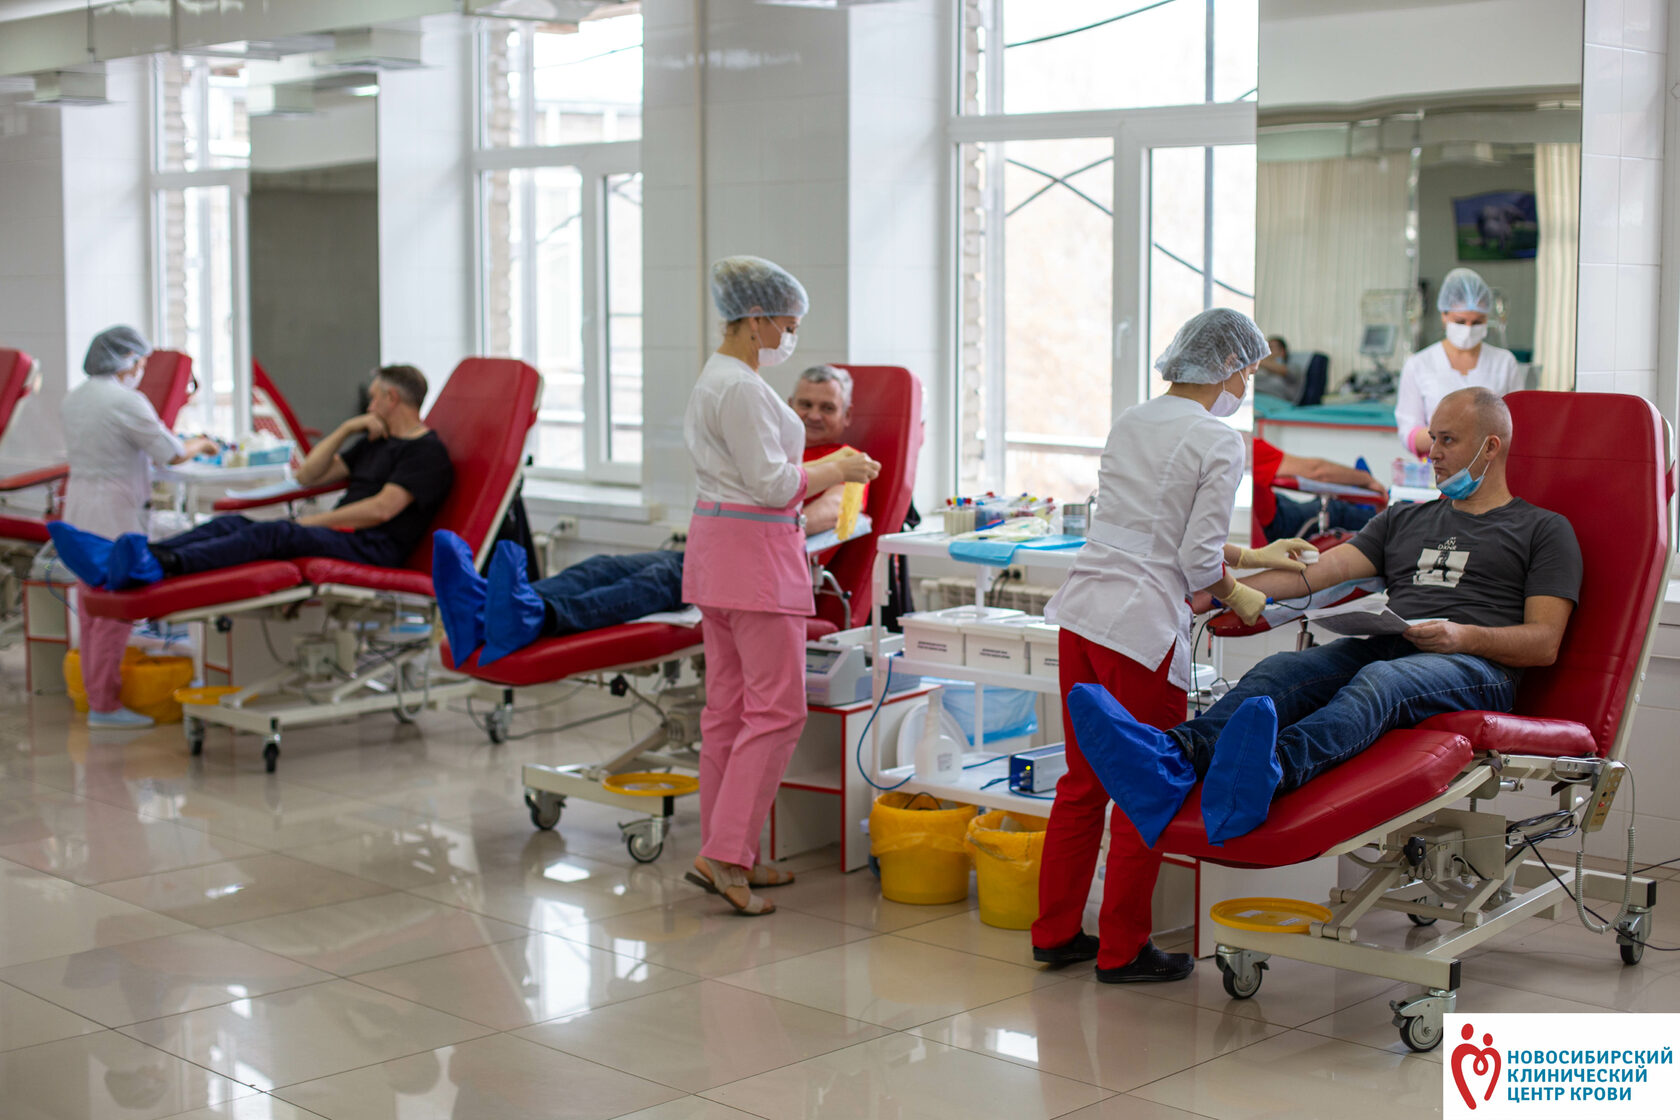 Отделы центра крови. Новосибирский клинический центр крови Новосибирск. Центр донорства крови Новосибирск. Новосибирский центр крови внутри.